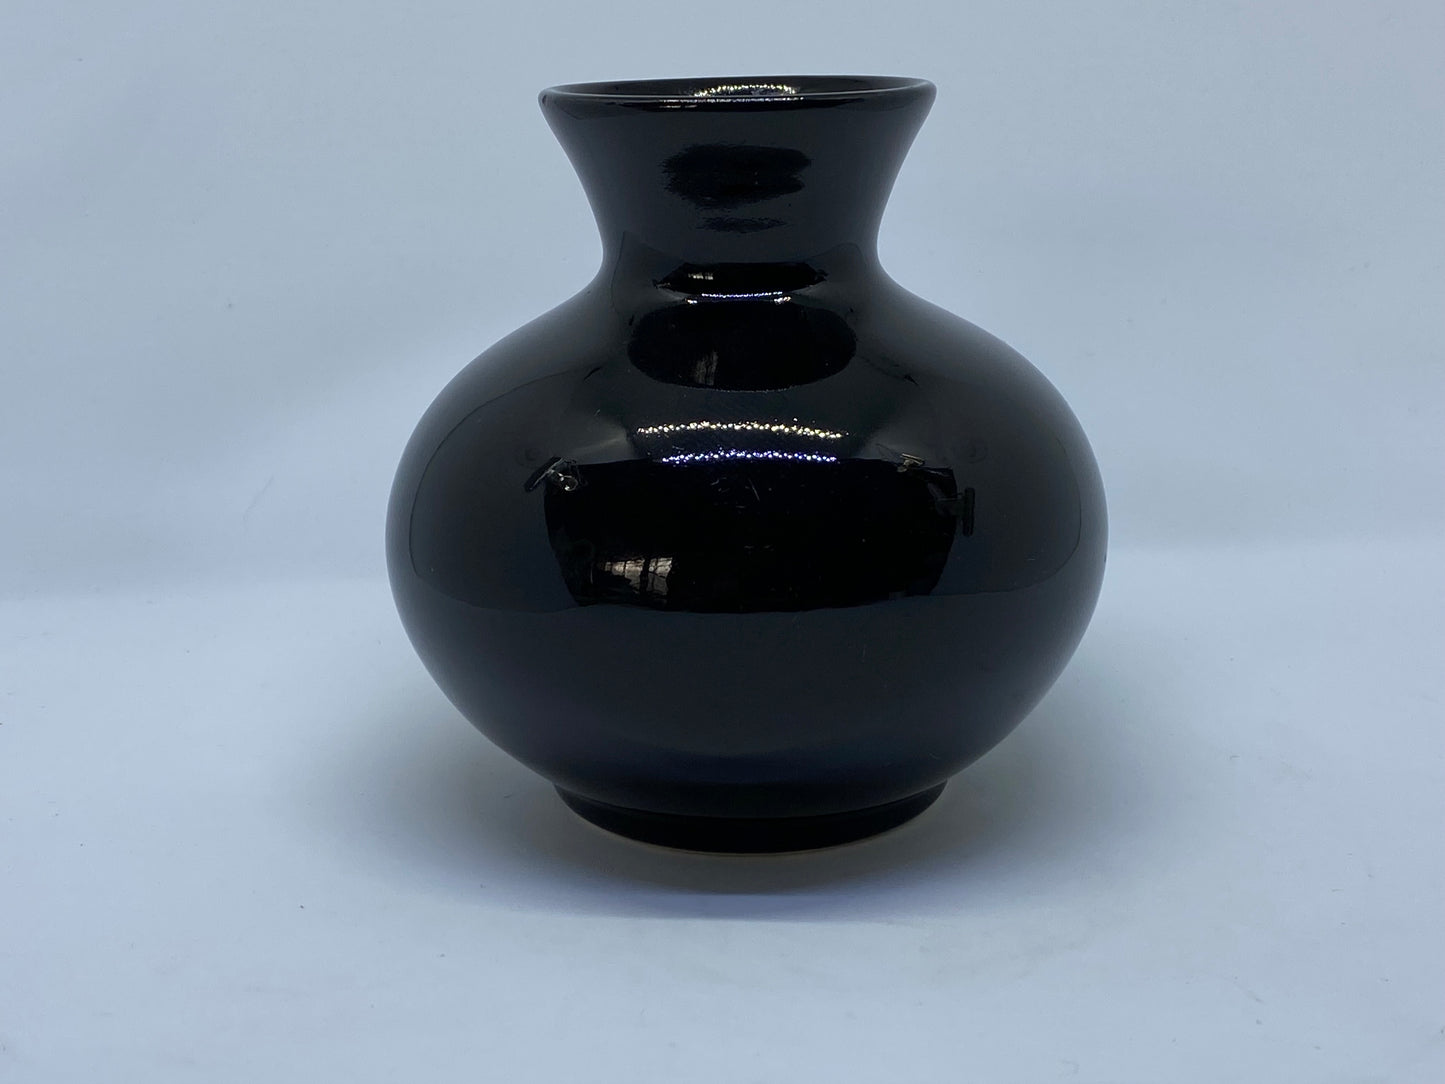 Hanstan Australia black vase